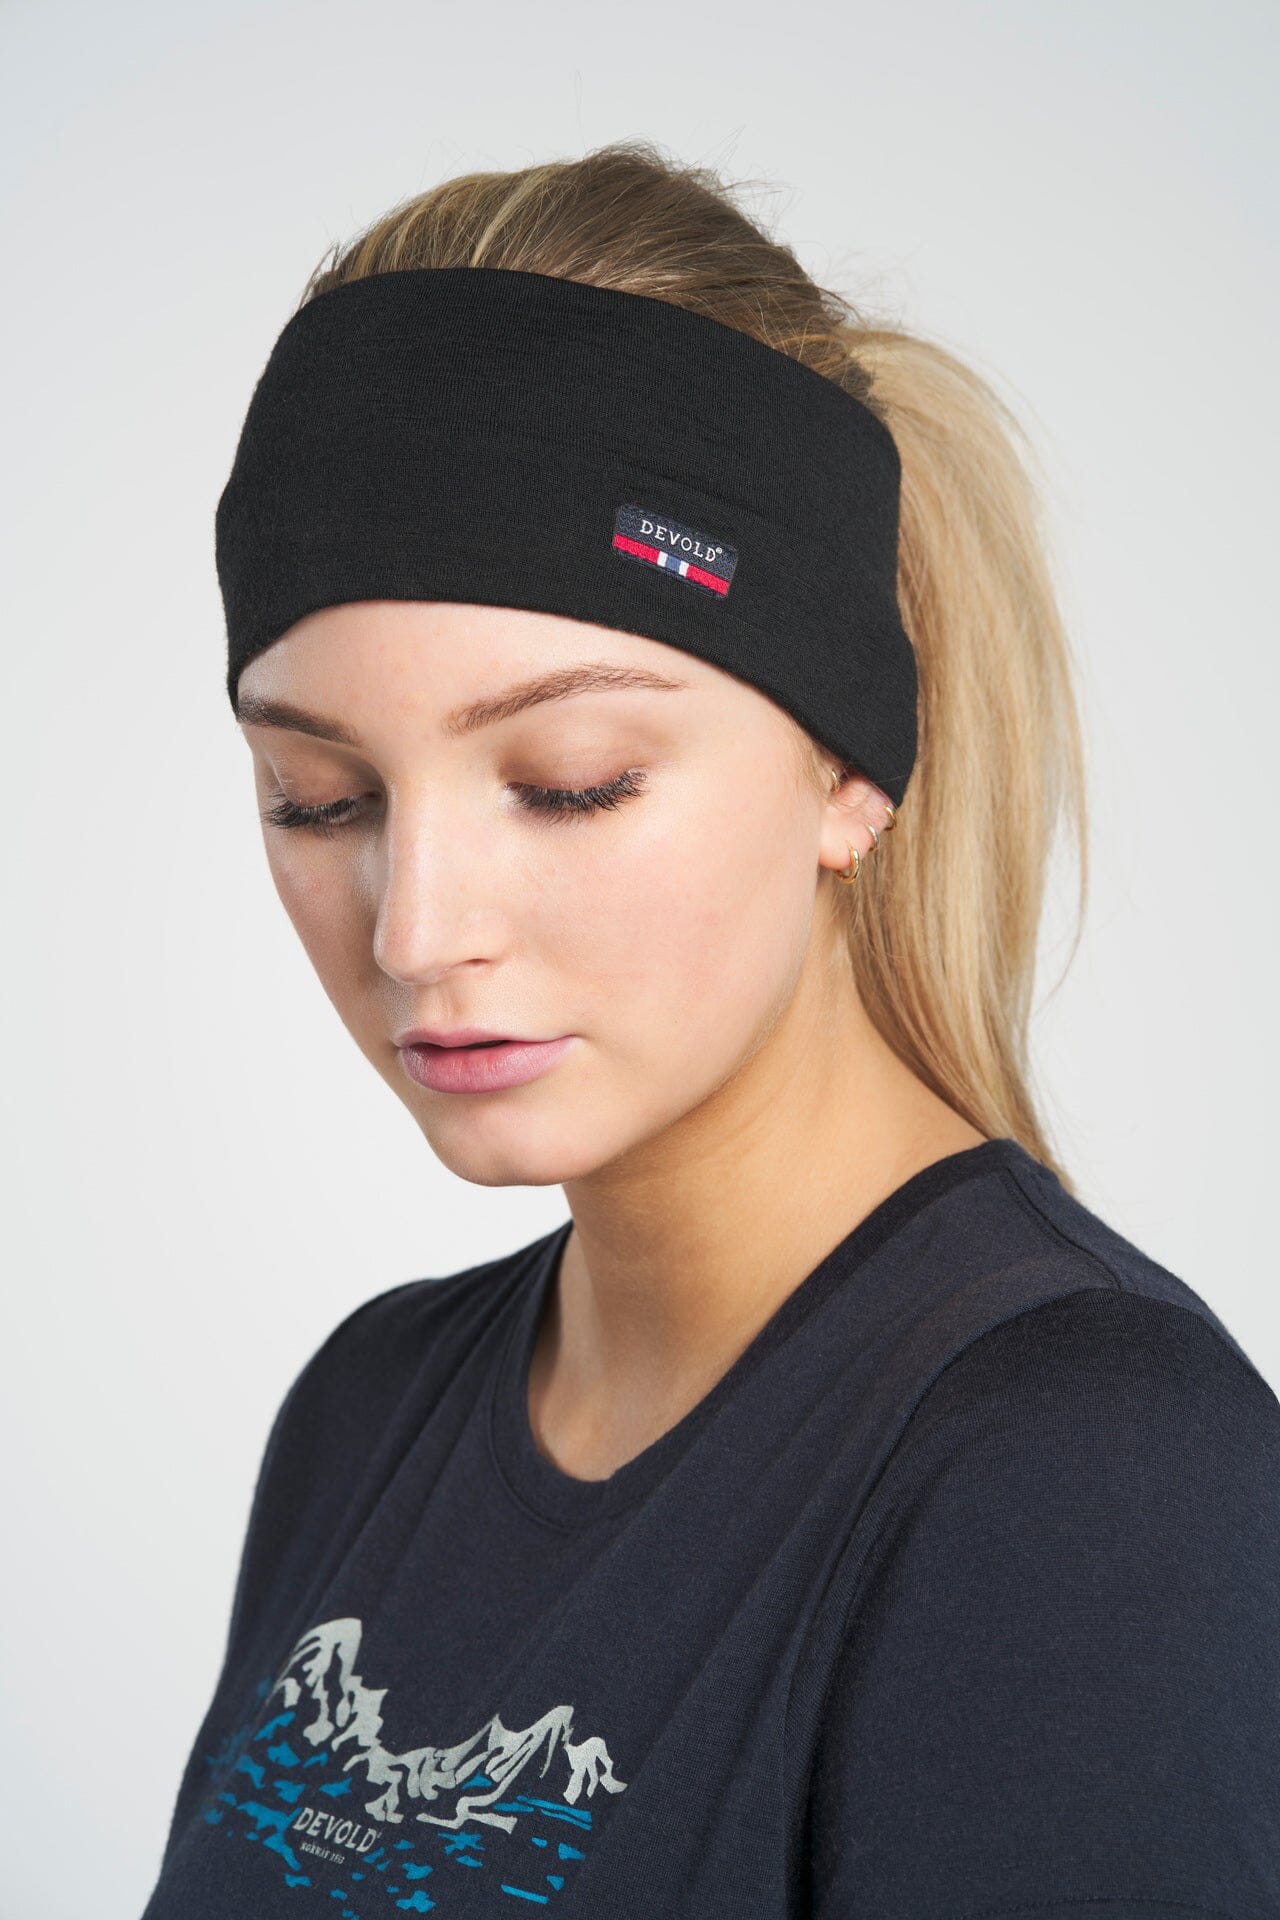 Devold Breeze Headband - 100% Merino Wool Ink Headwear